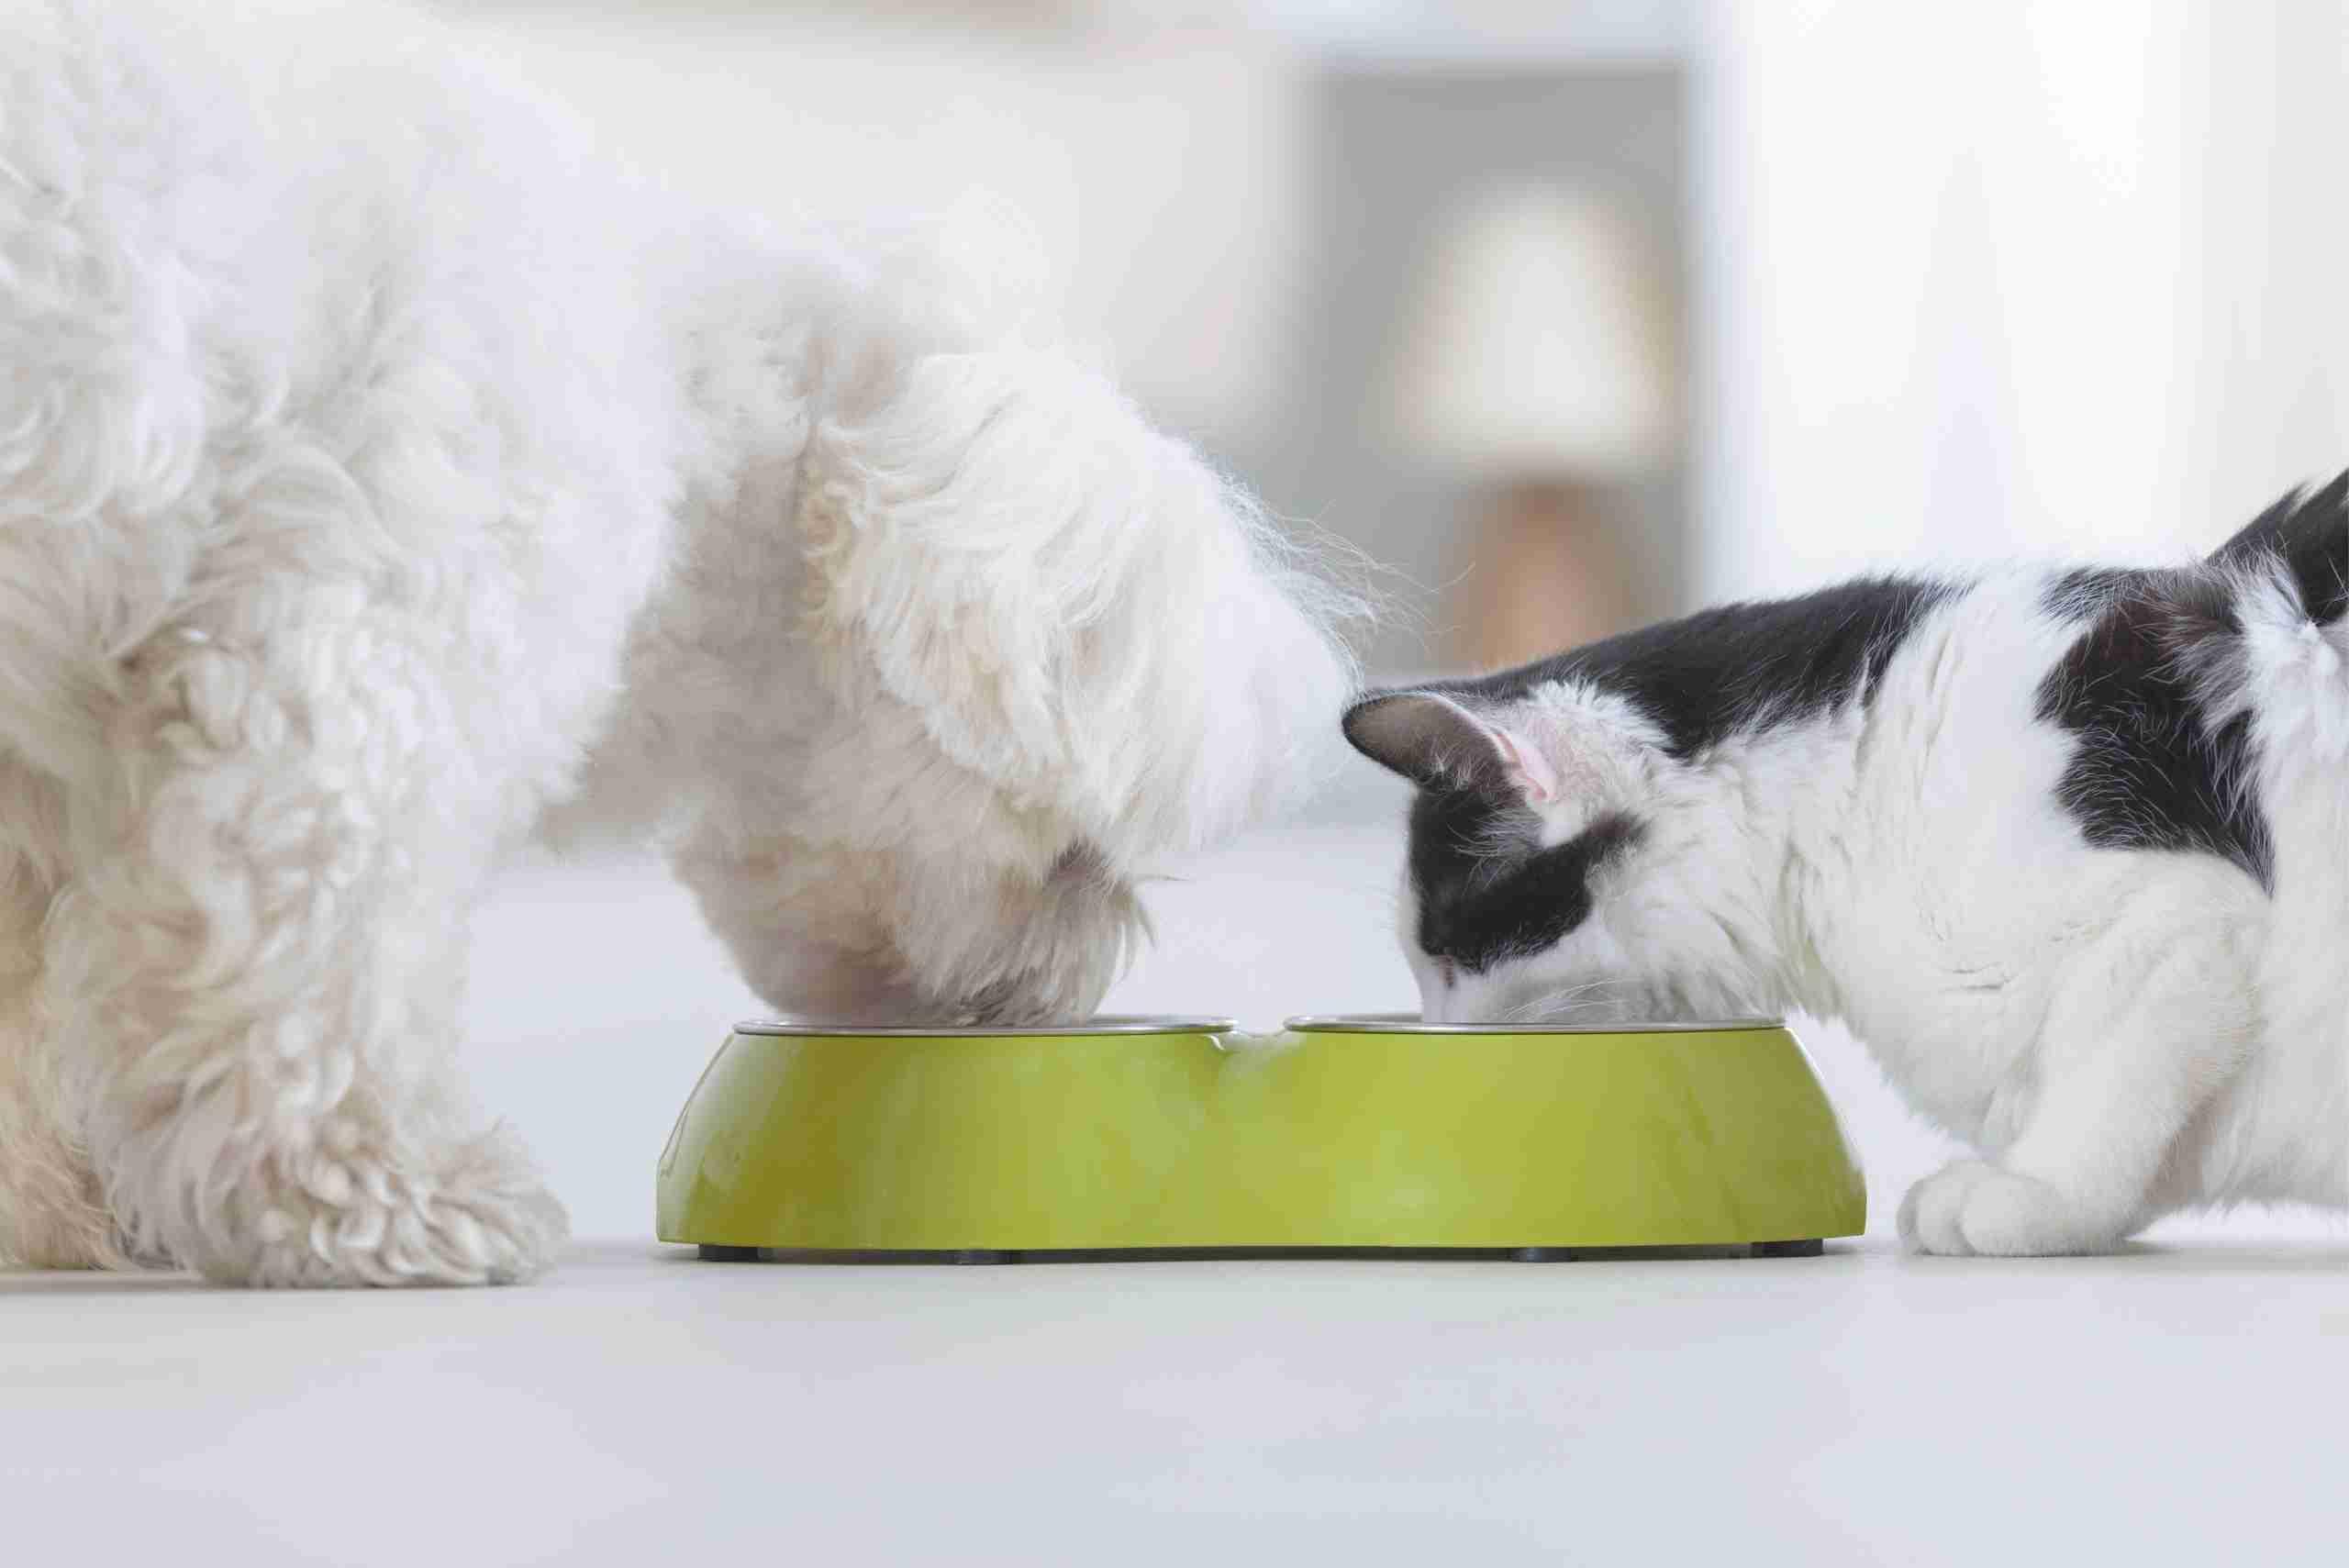 alergénios alimentares em cães e gatos